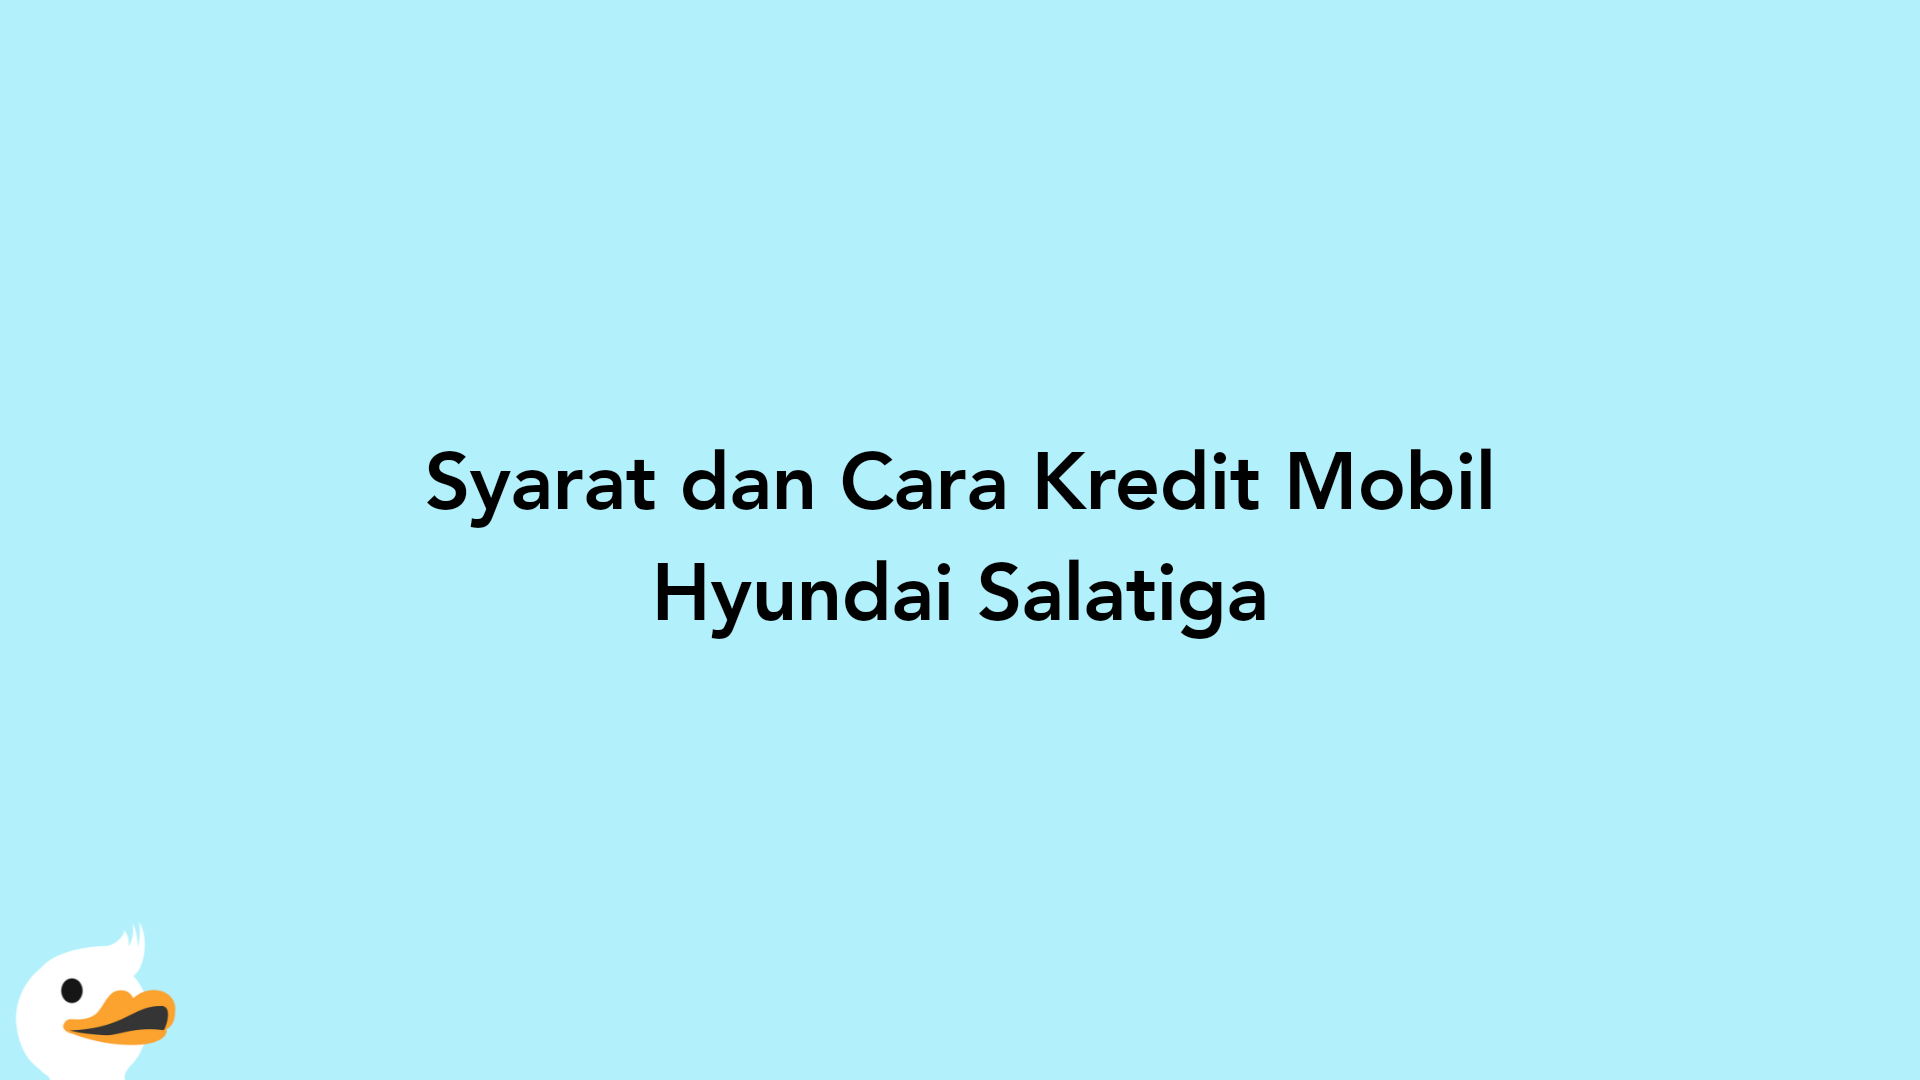 Syarat dan Cara Kredit Mobil Hyundai Salatiga